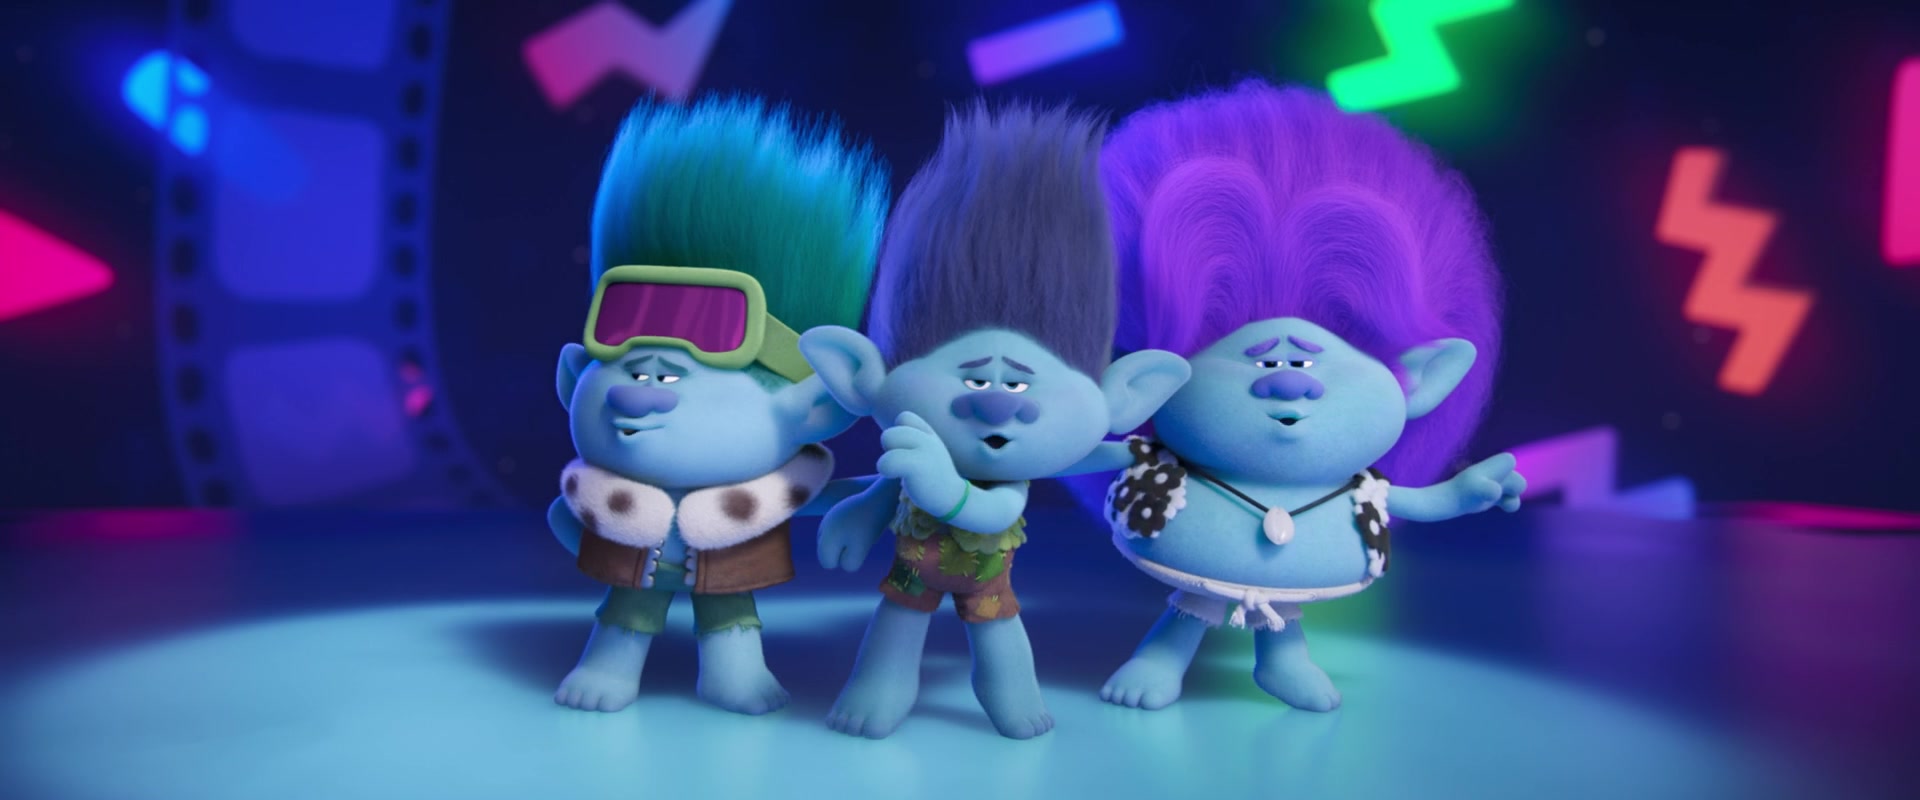 Trolls Band Together (2023) Screencap | Fancaps